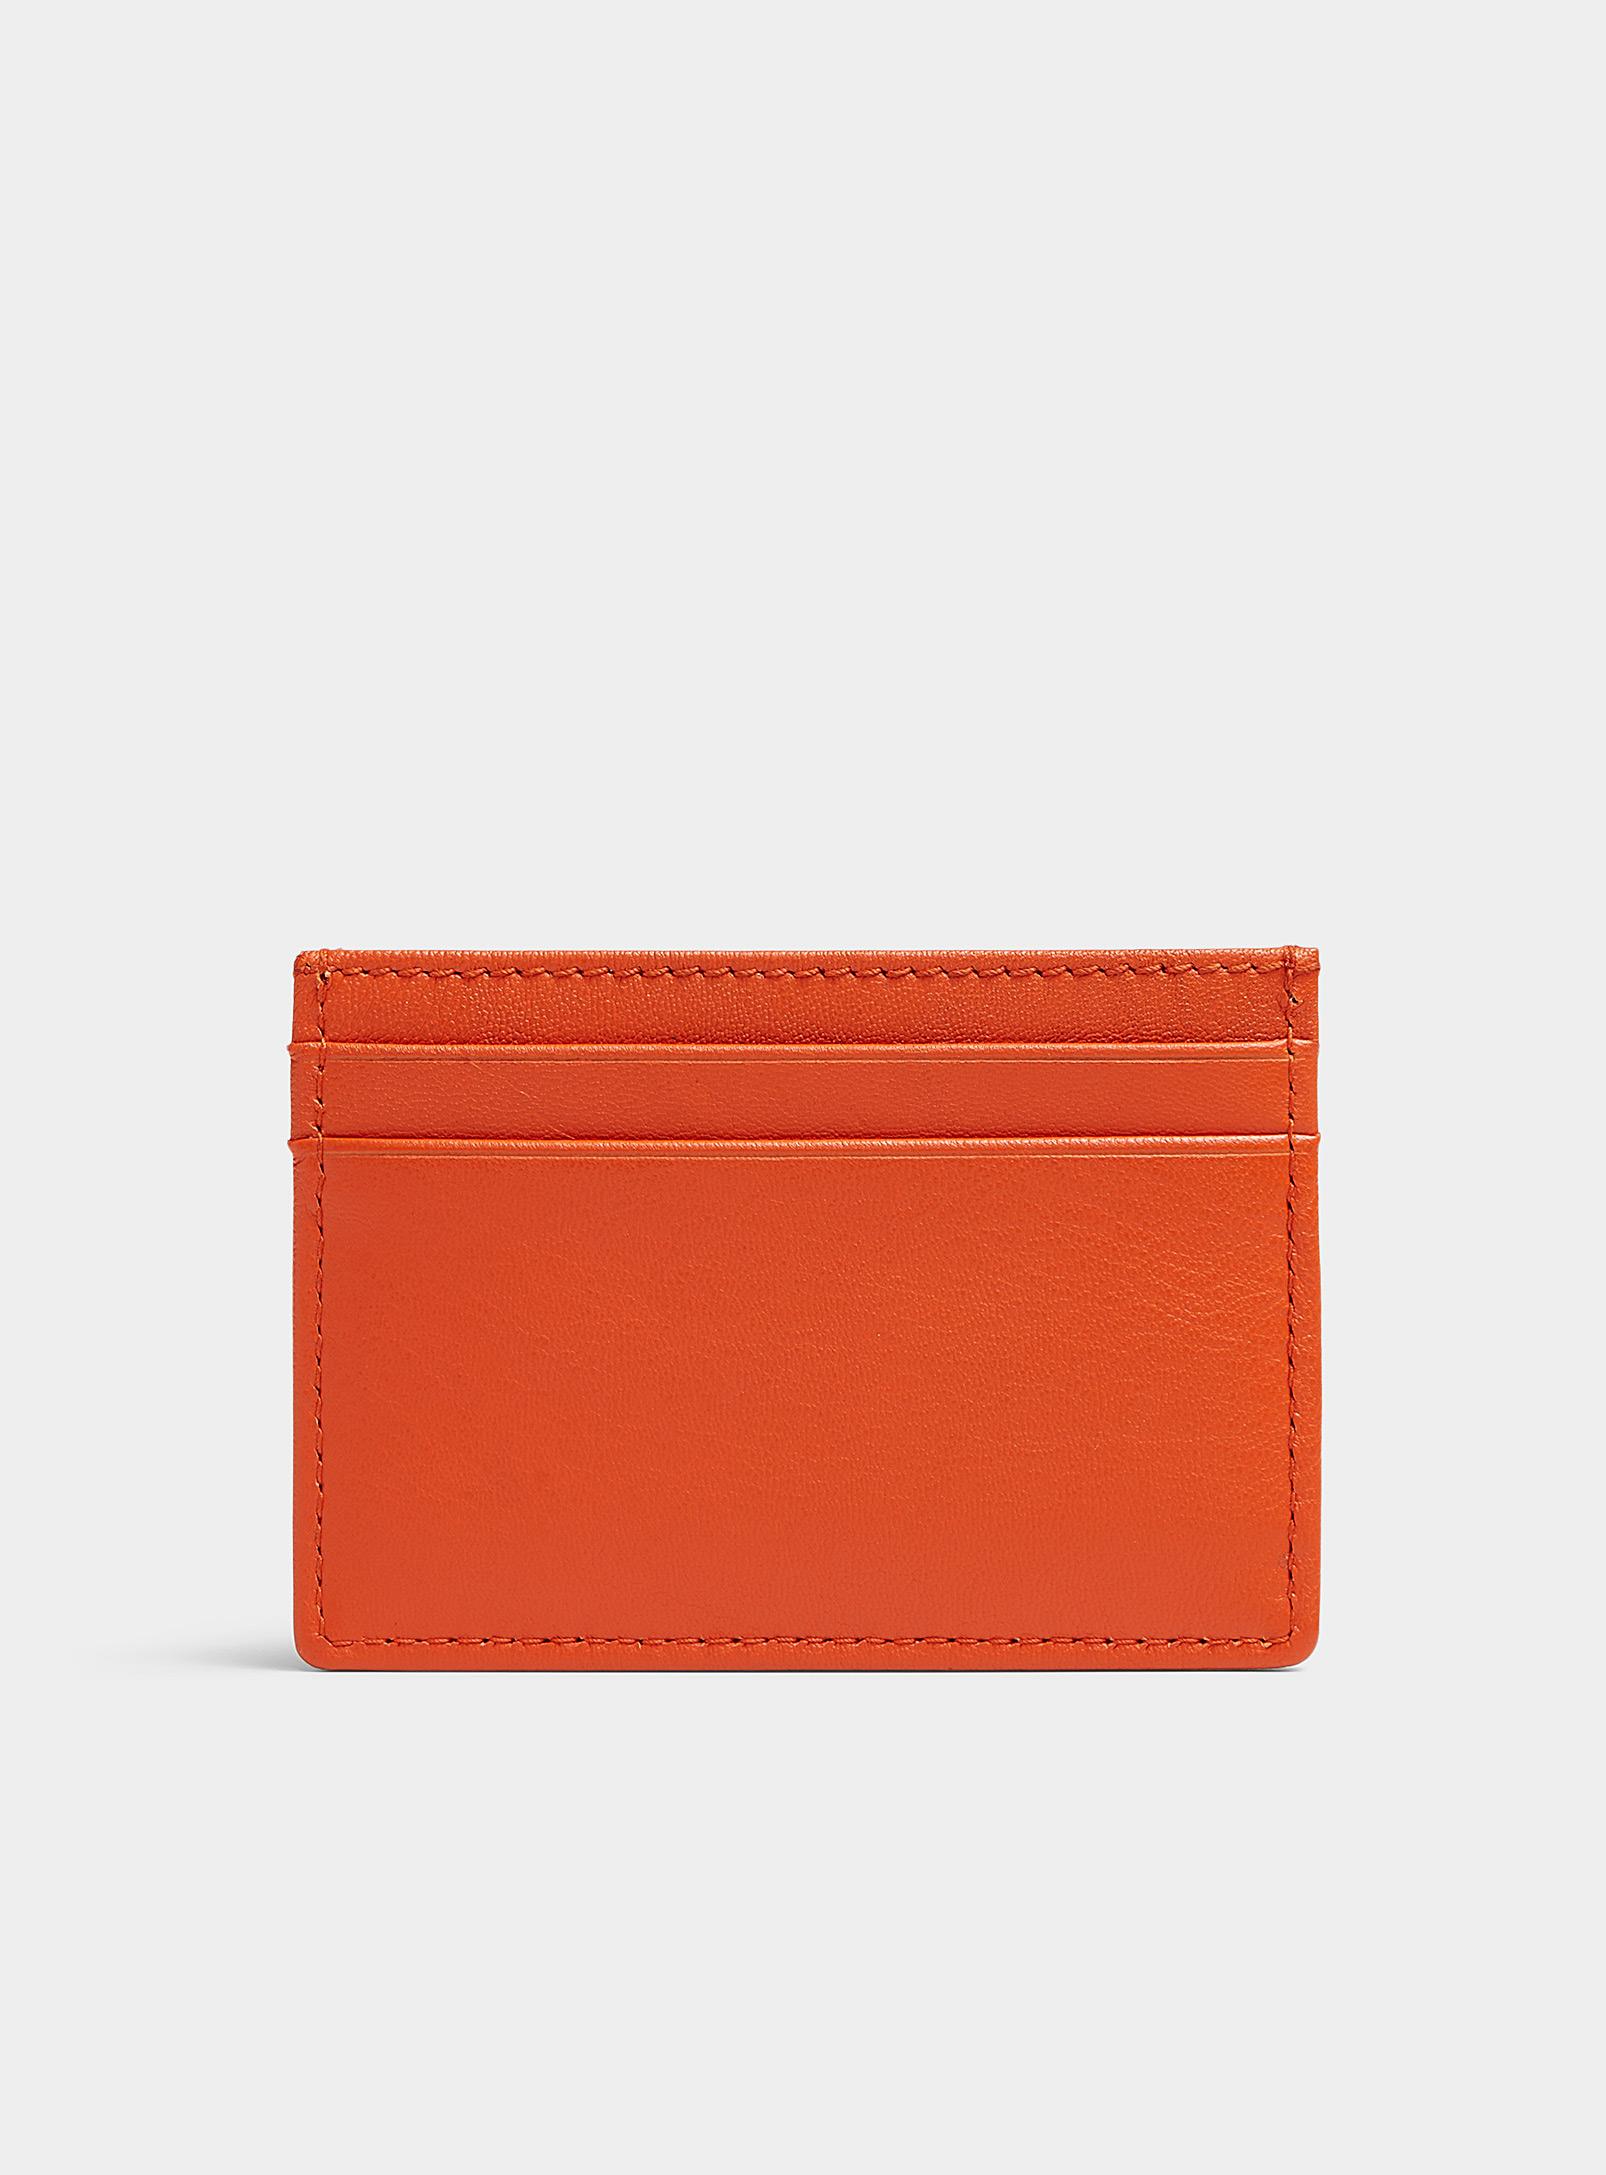 BOSS by HUGO BOSS Orange Emed Logo Leather Card Holder in Red for Men | Lyst